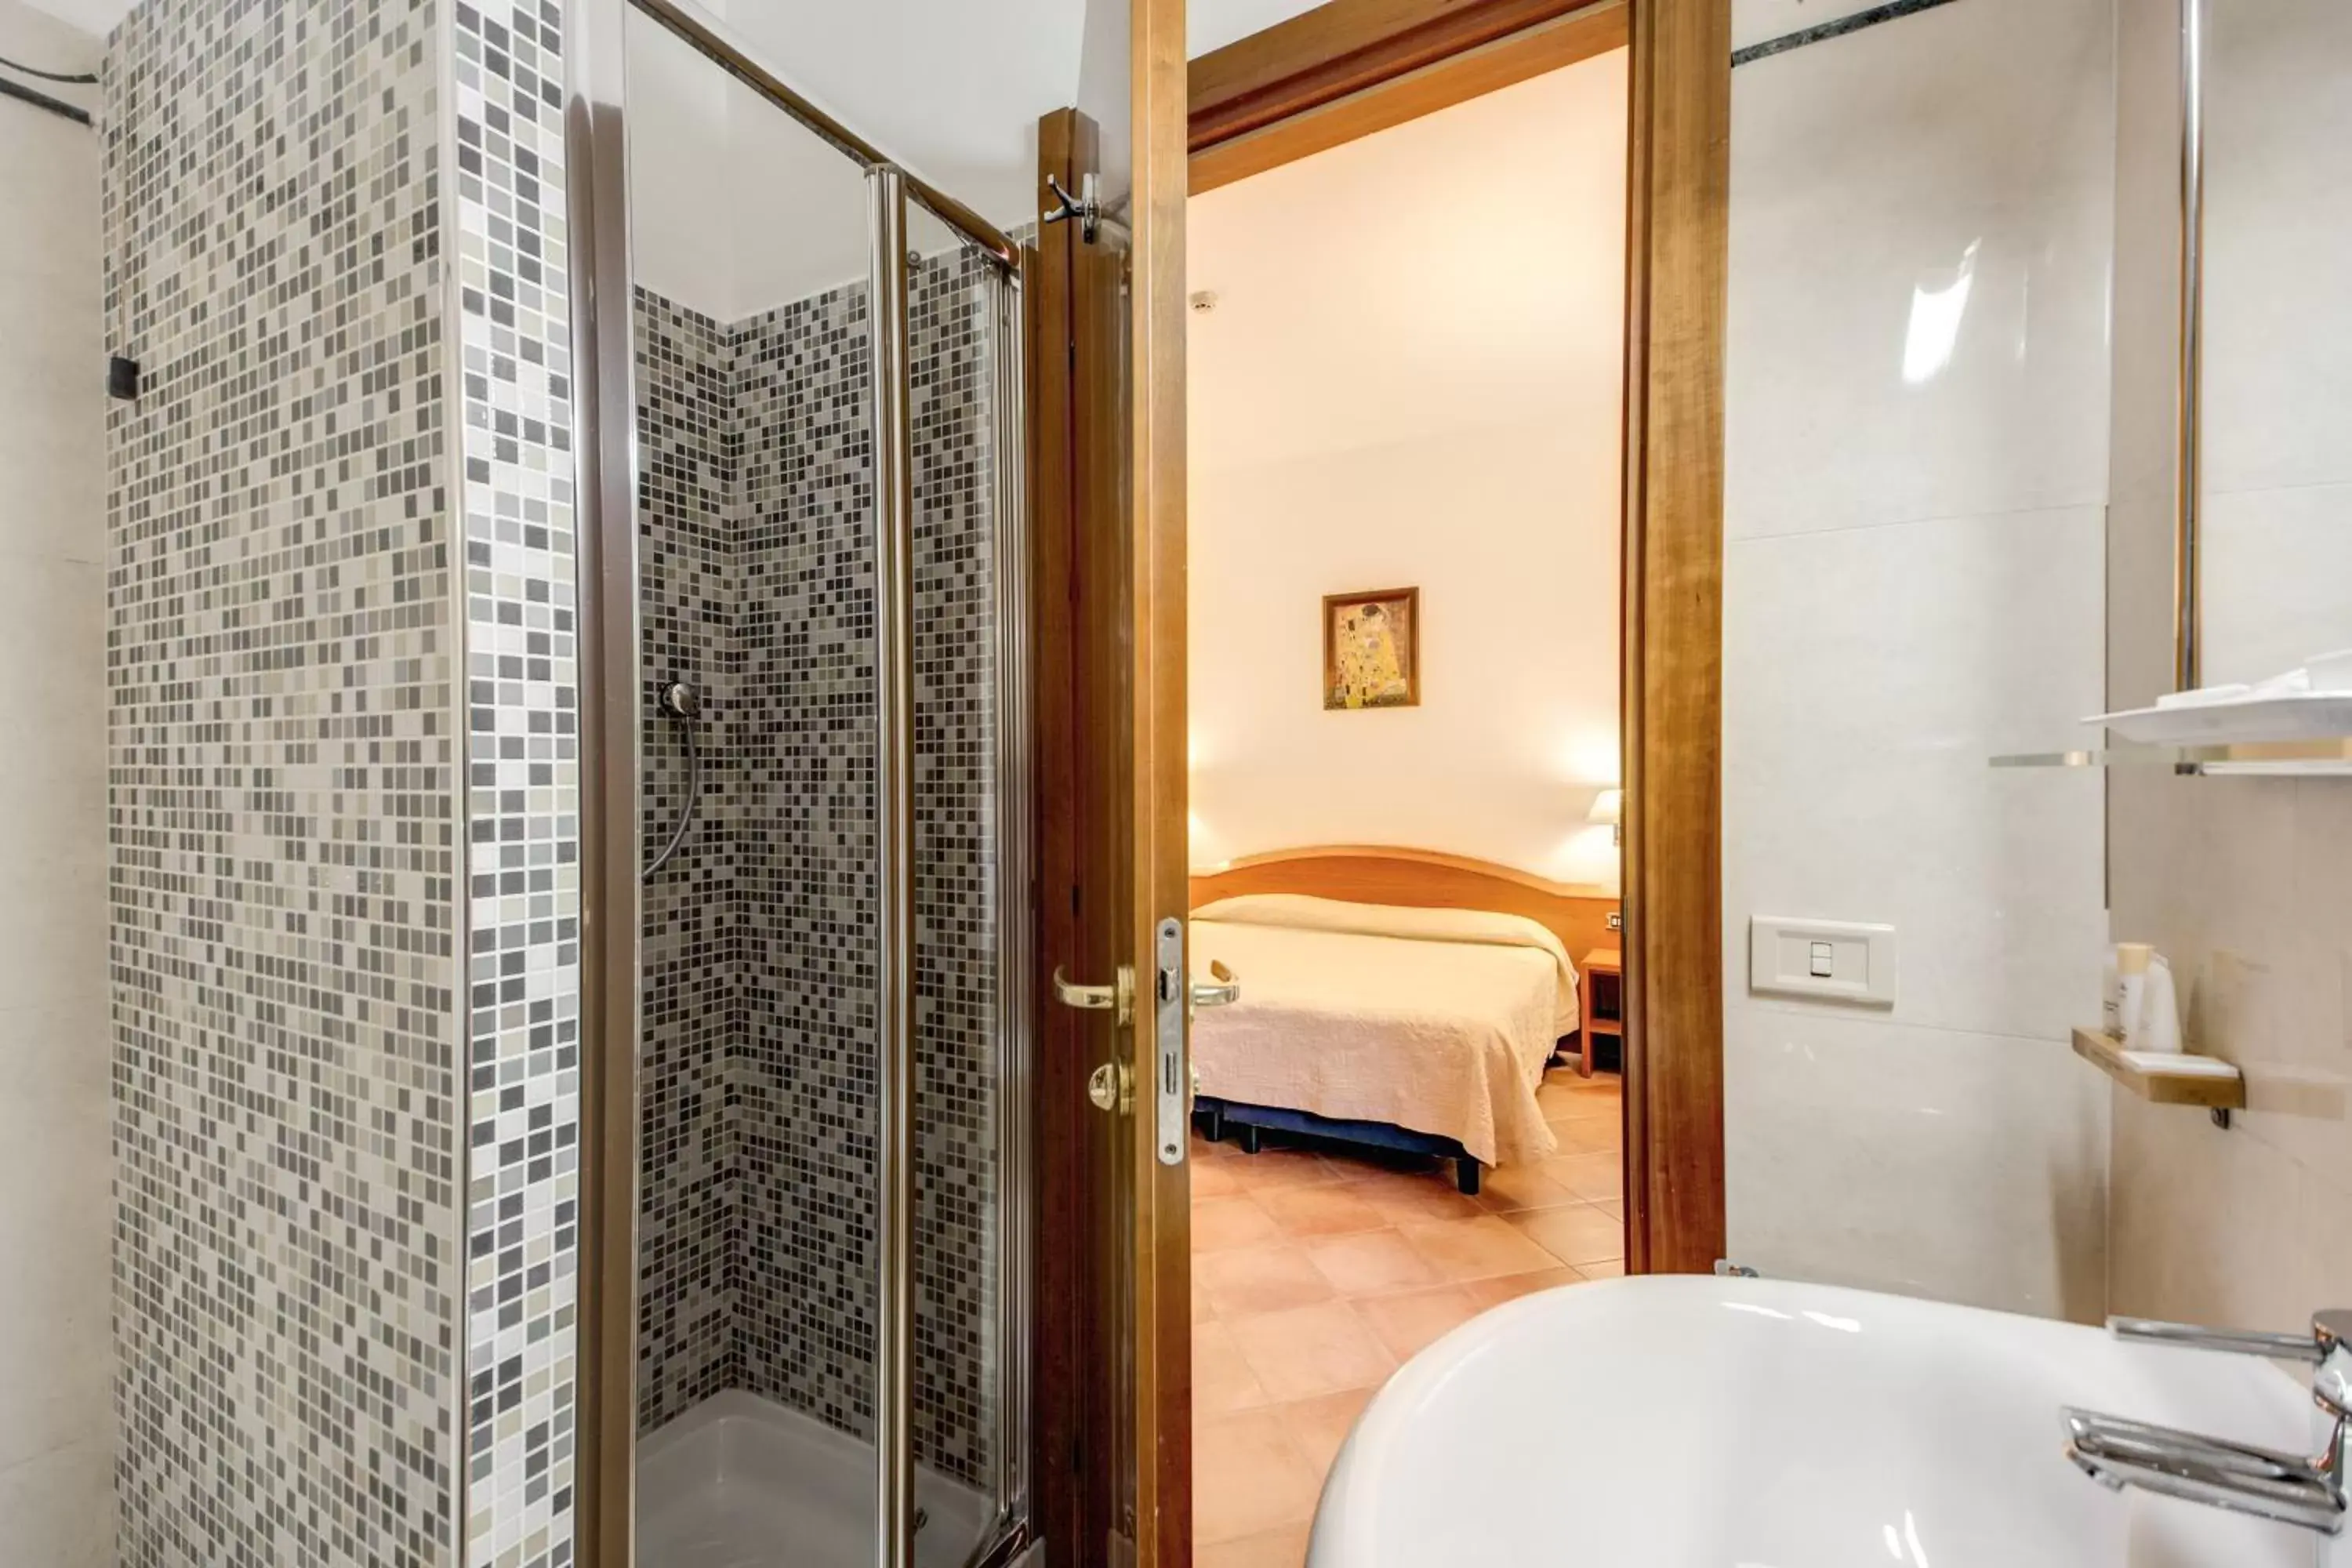 Photo of the whole room, Bathroom in Hotel Gea Di Vulcano